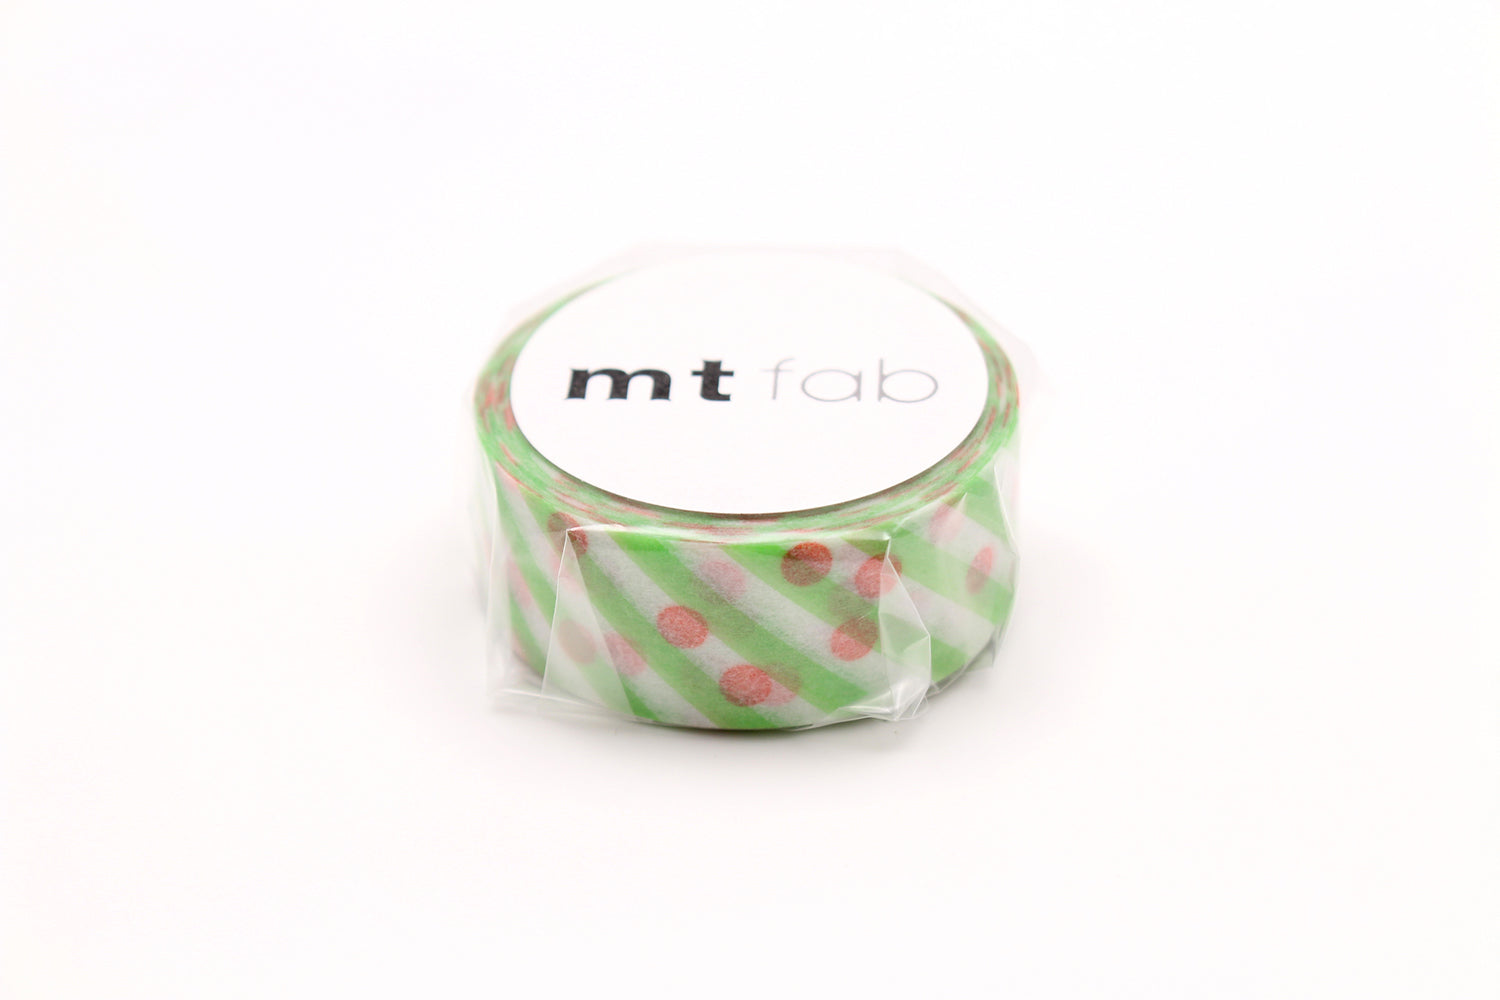 mt fab - Dot x Stripe - 15mm Washi Tape